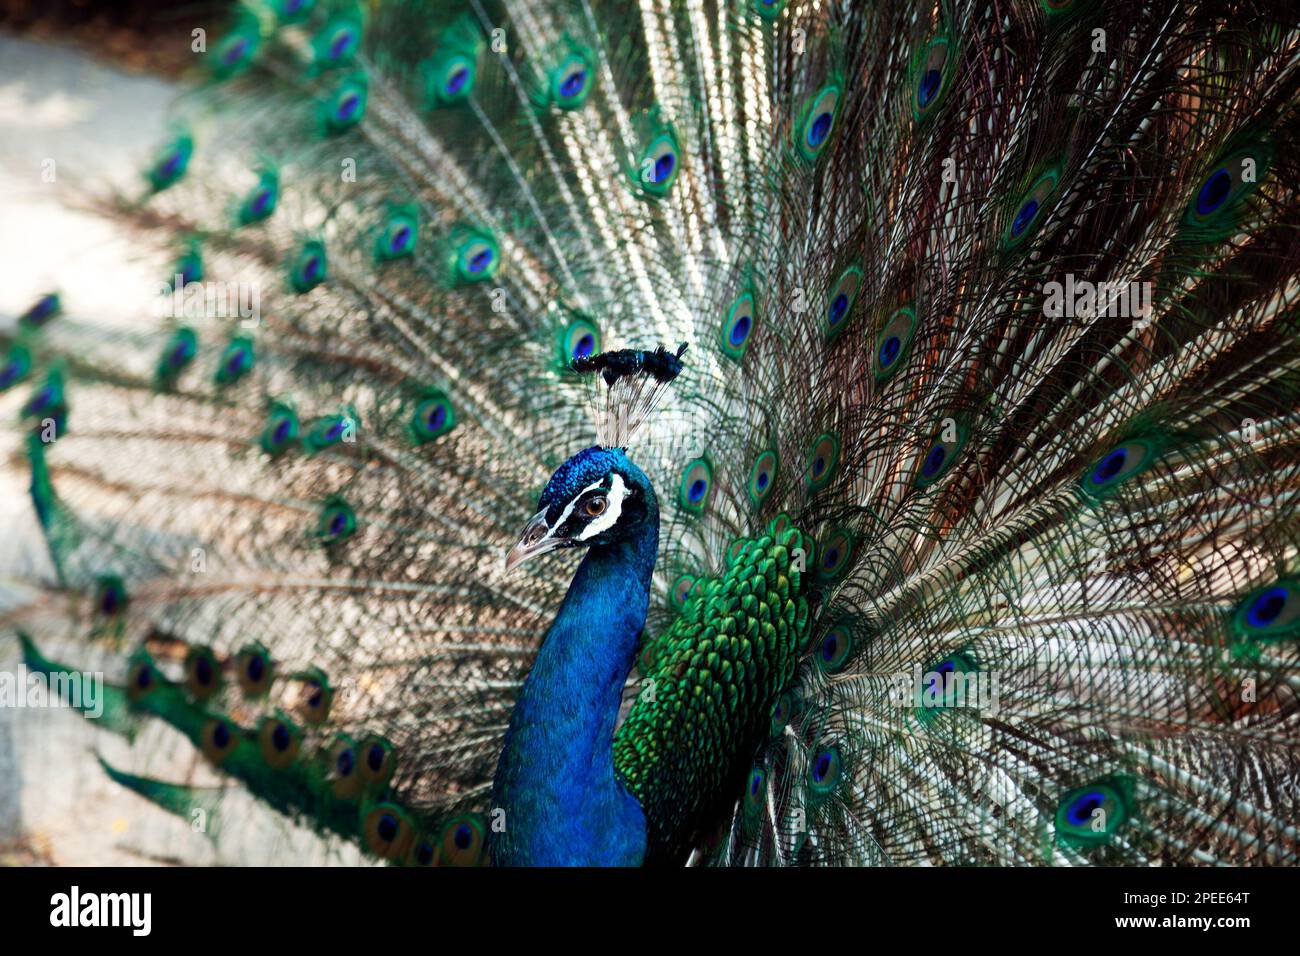 Elegante pavone che mostra la sua coda come parte del rituale di accoppiamento. Paia maschio blu e verde che mostra le piume del treno Foto Stock